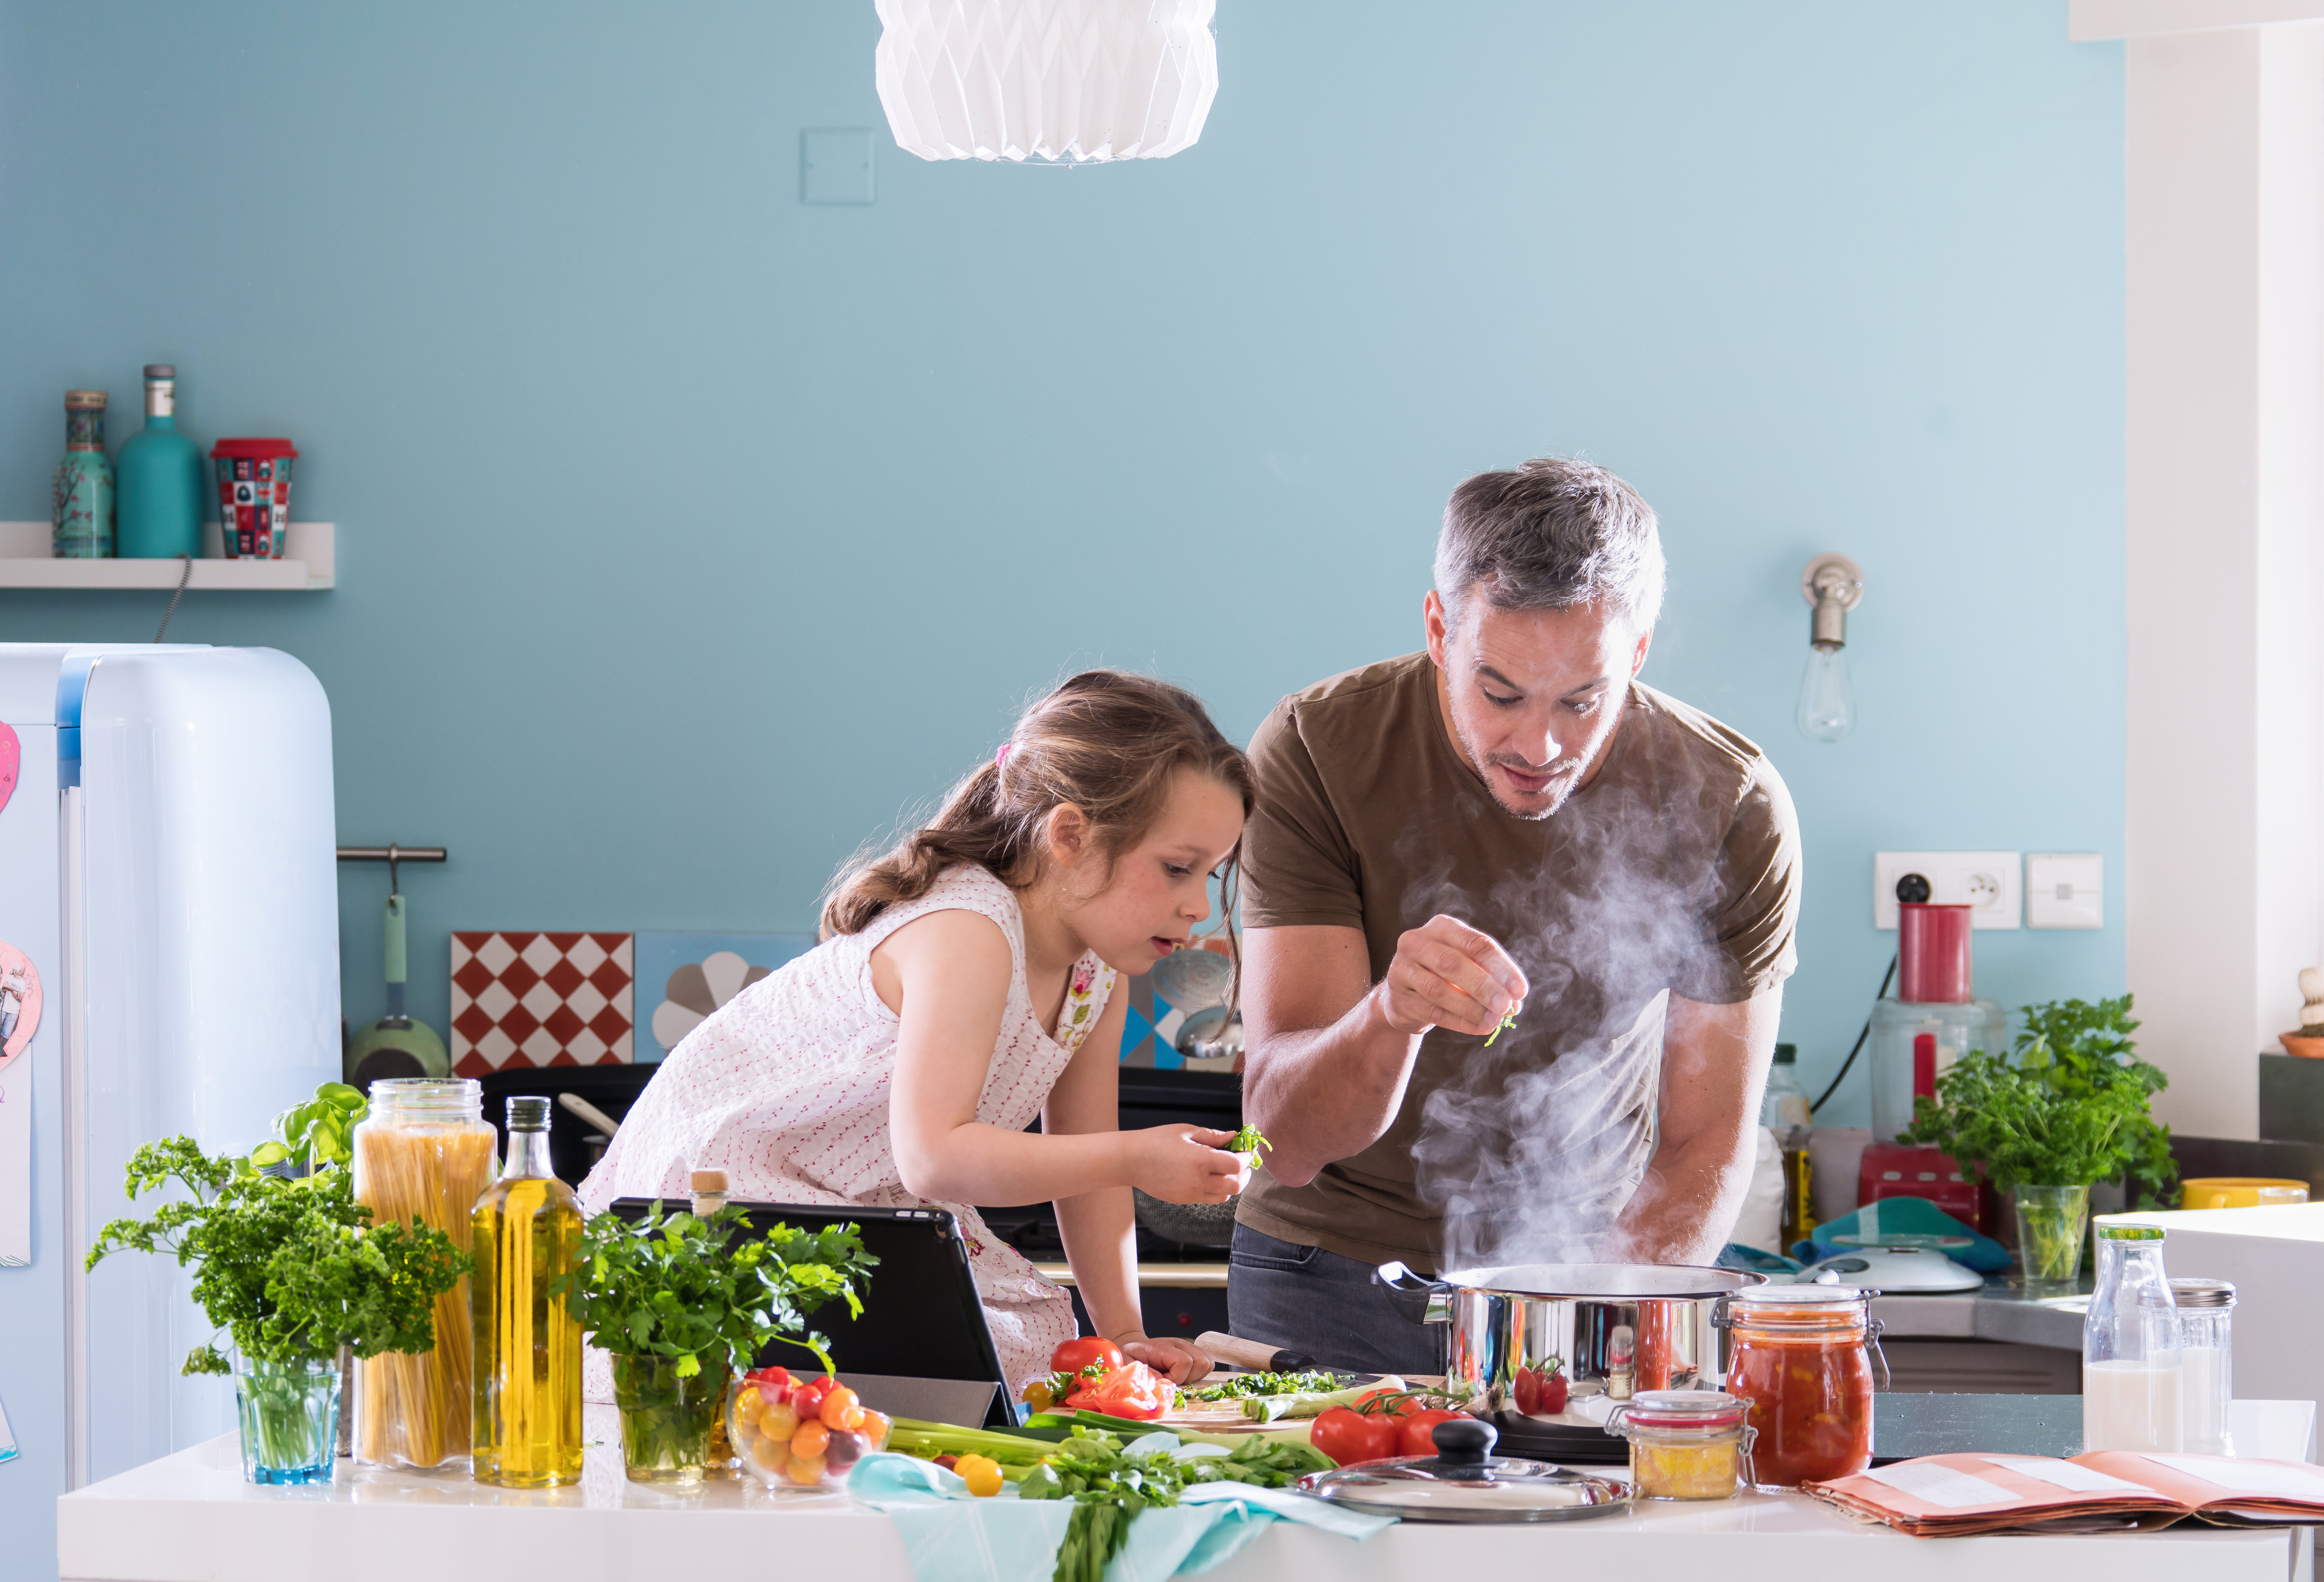 Papa kocht mit seinem kleinen Mädchen in der Küche Essen | Quelle: Shutterstock